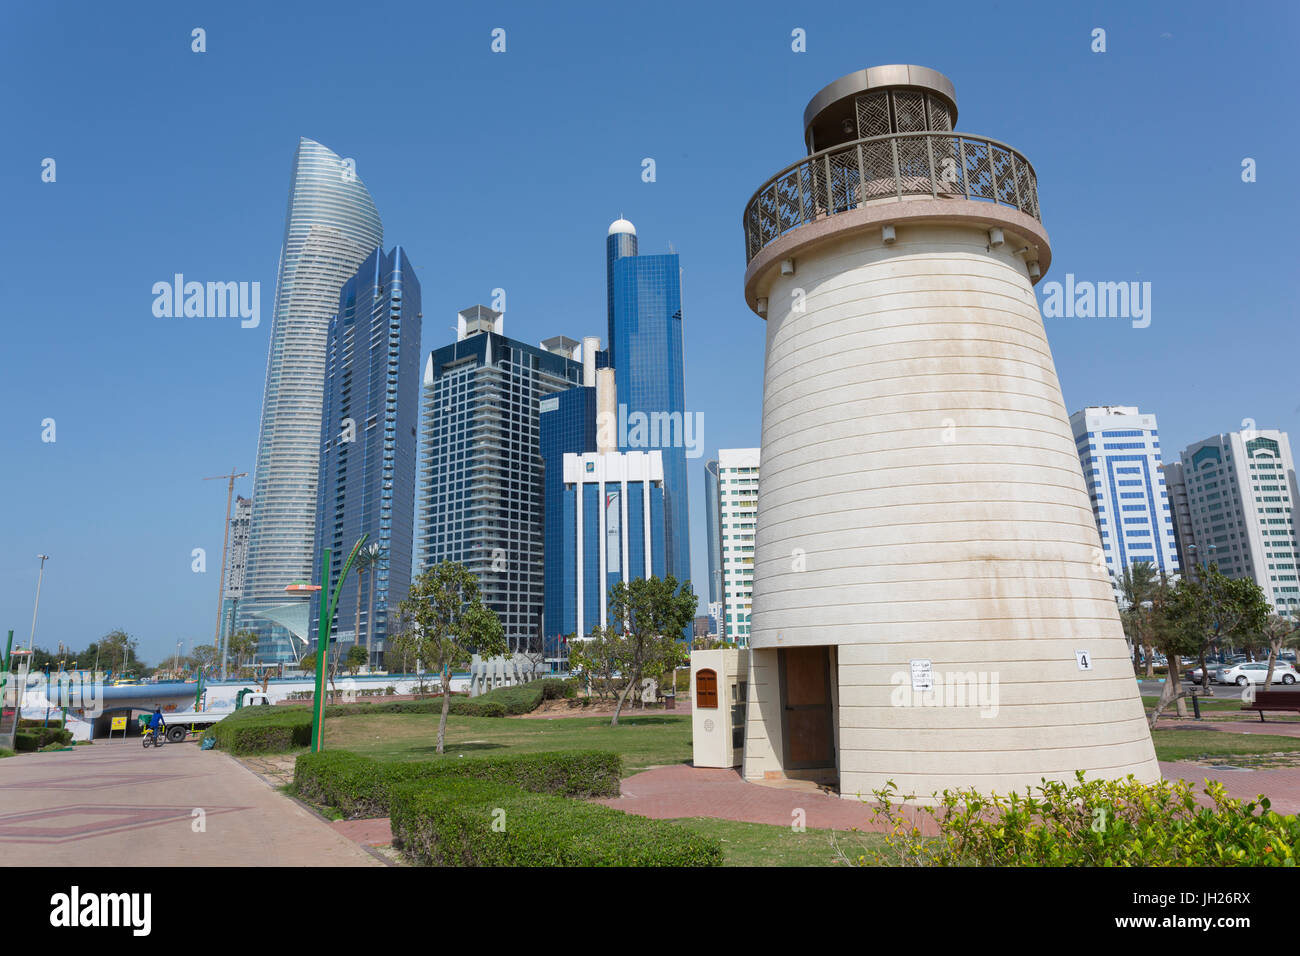 Vue de la Landmark Tower à partir de la famille Park, Abu Dhabi, Émirats arabes unis, Moyen Orient Banque D'Images